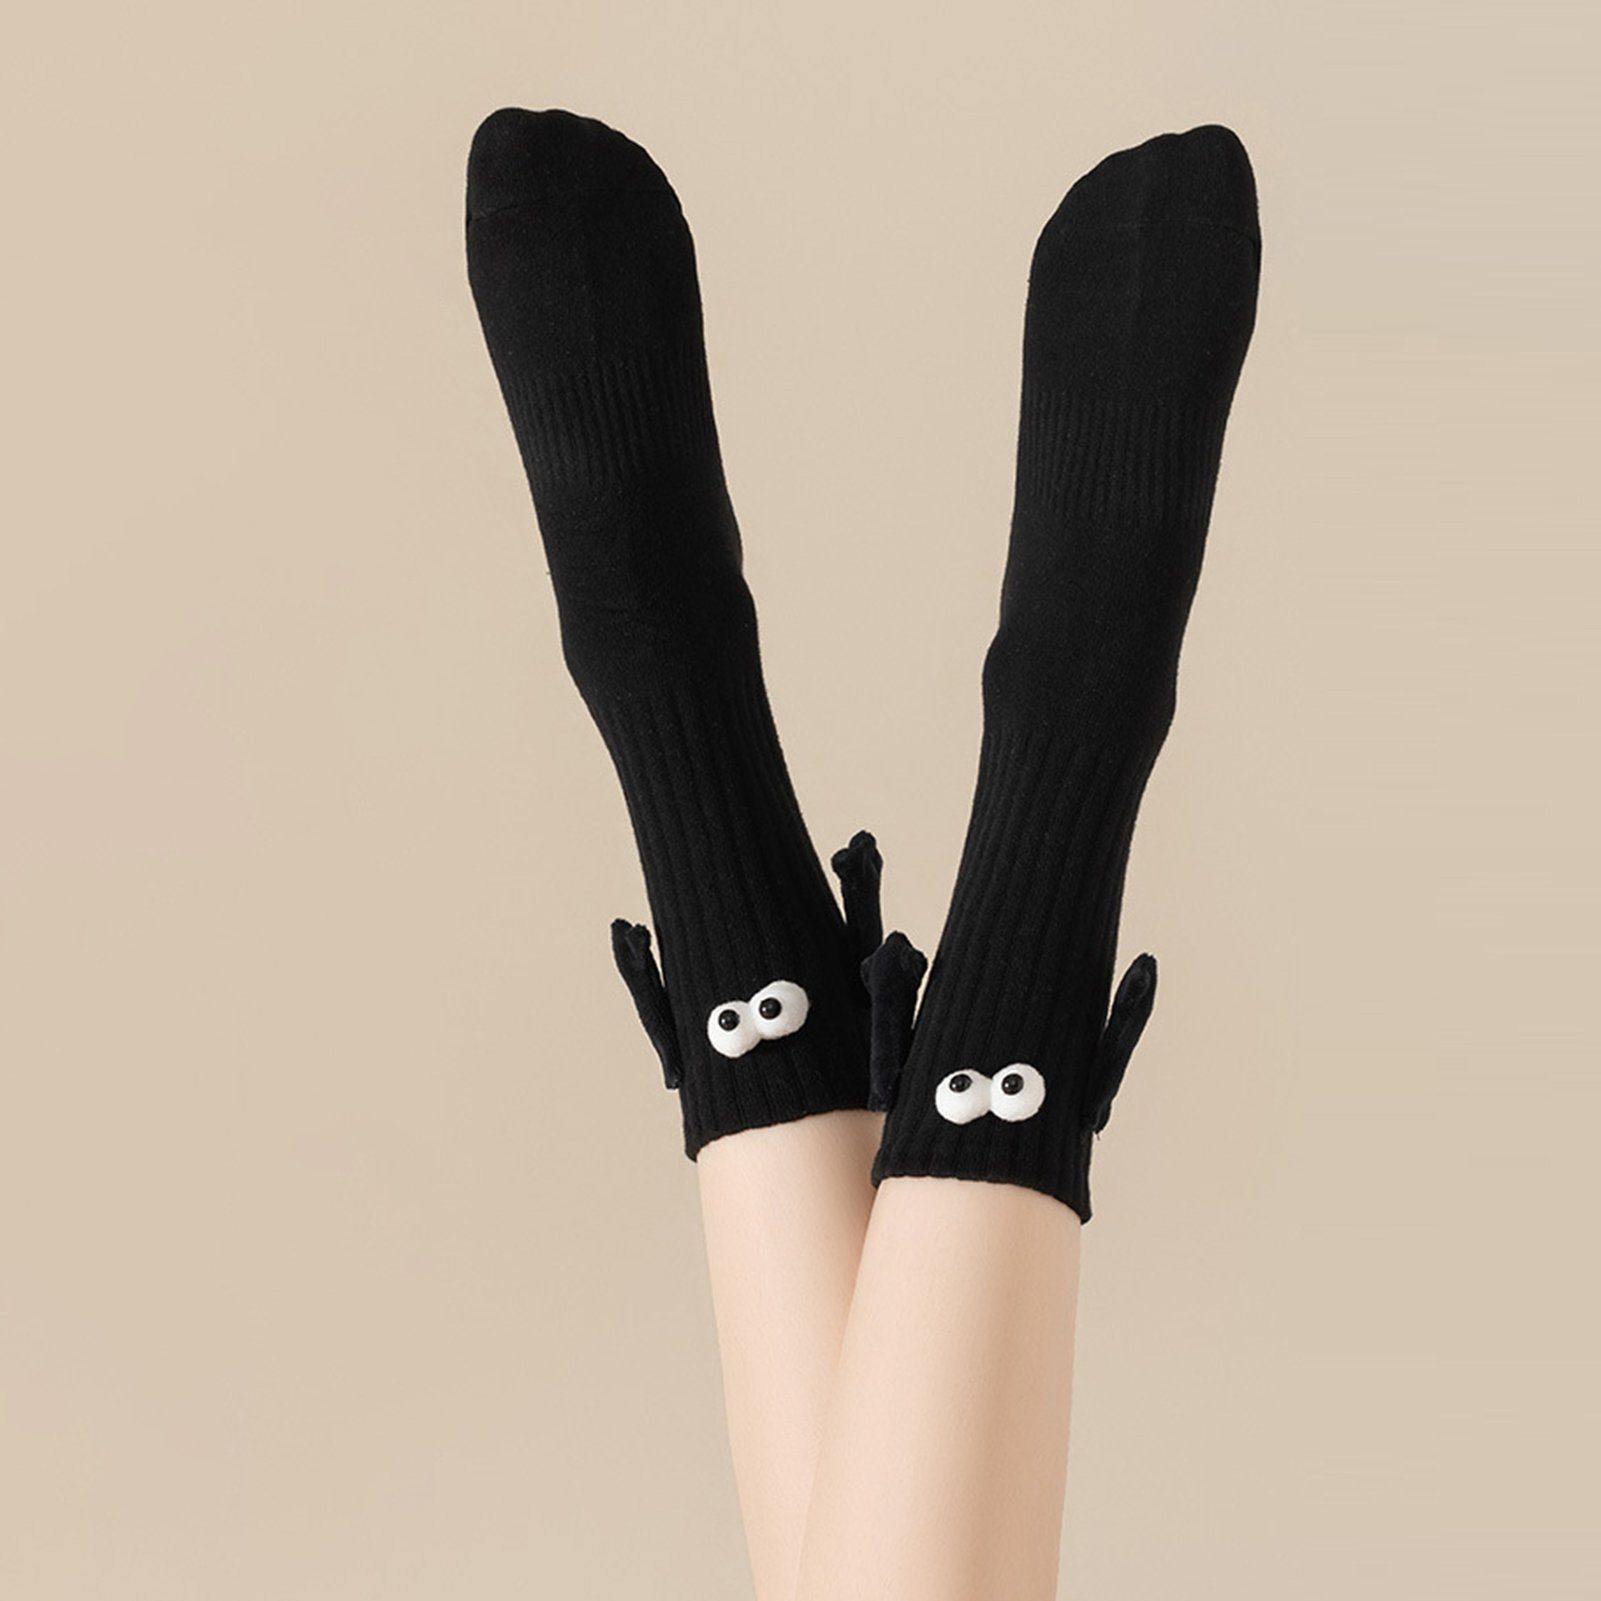 Die (1-Paar, Liebhaber Socken Süße Hände Paar) Rutaqian magnetische Socken Socken 1 Schwarz Halten Strümpfe